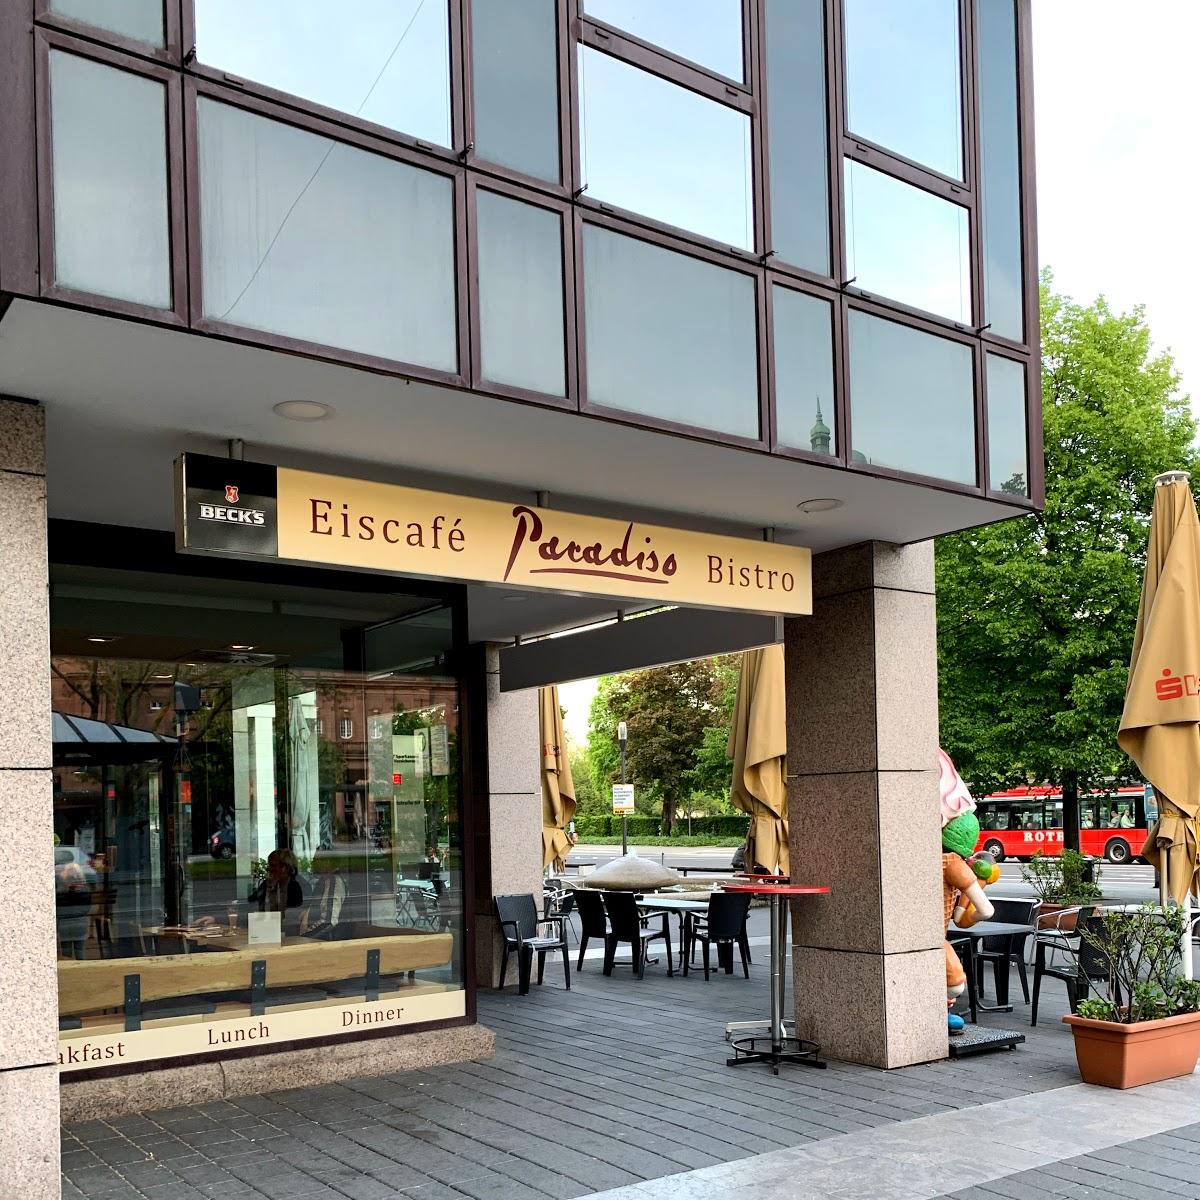 Restaurant "Eiscafé Paradiso GmbH" in Wiesbaden